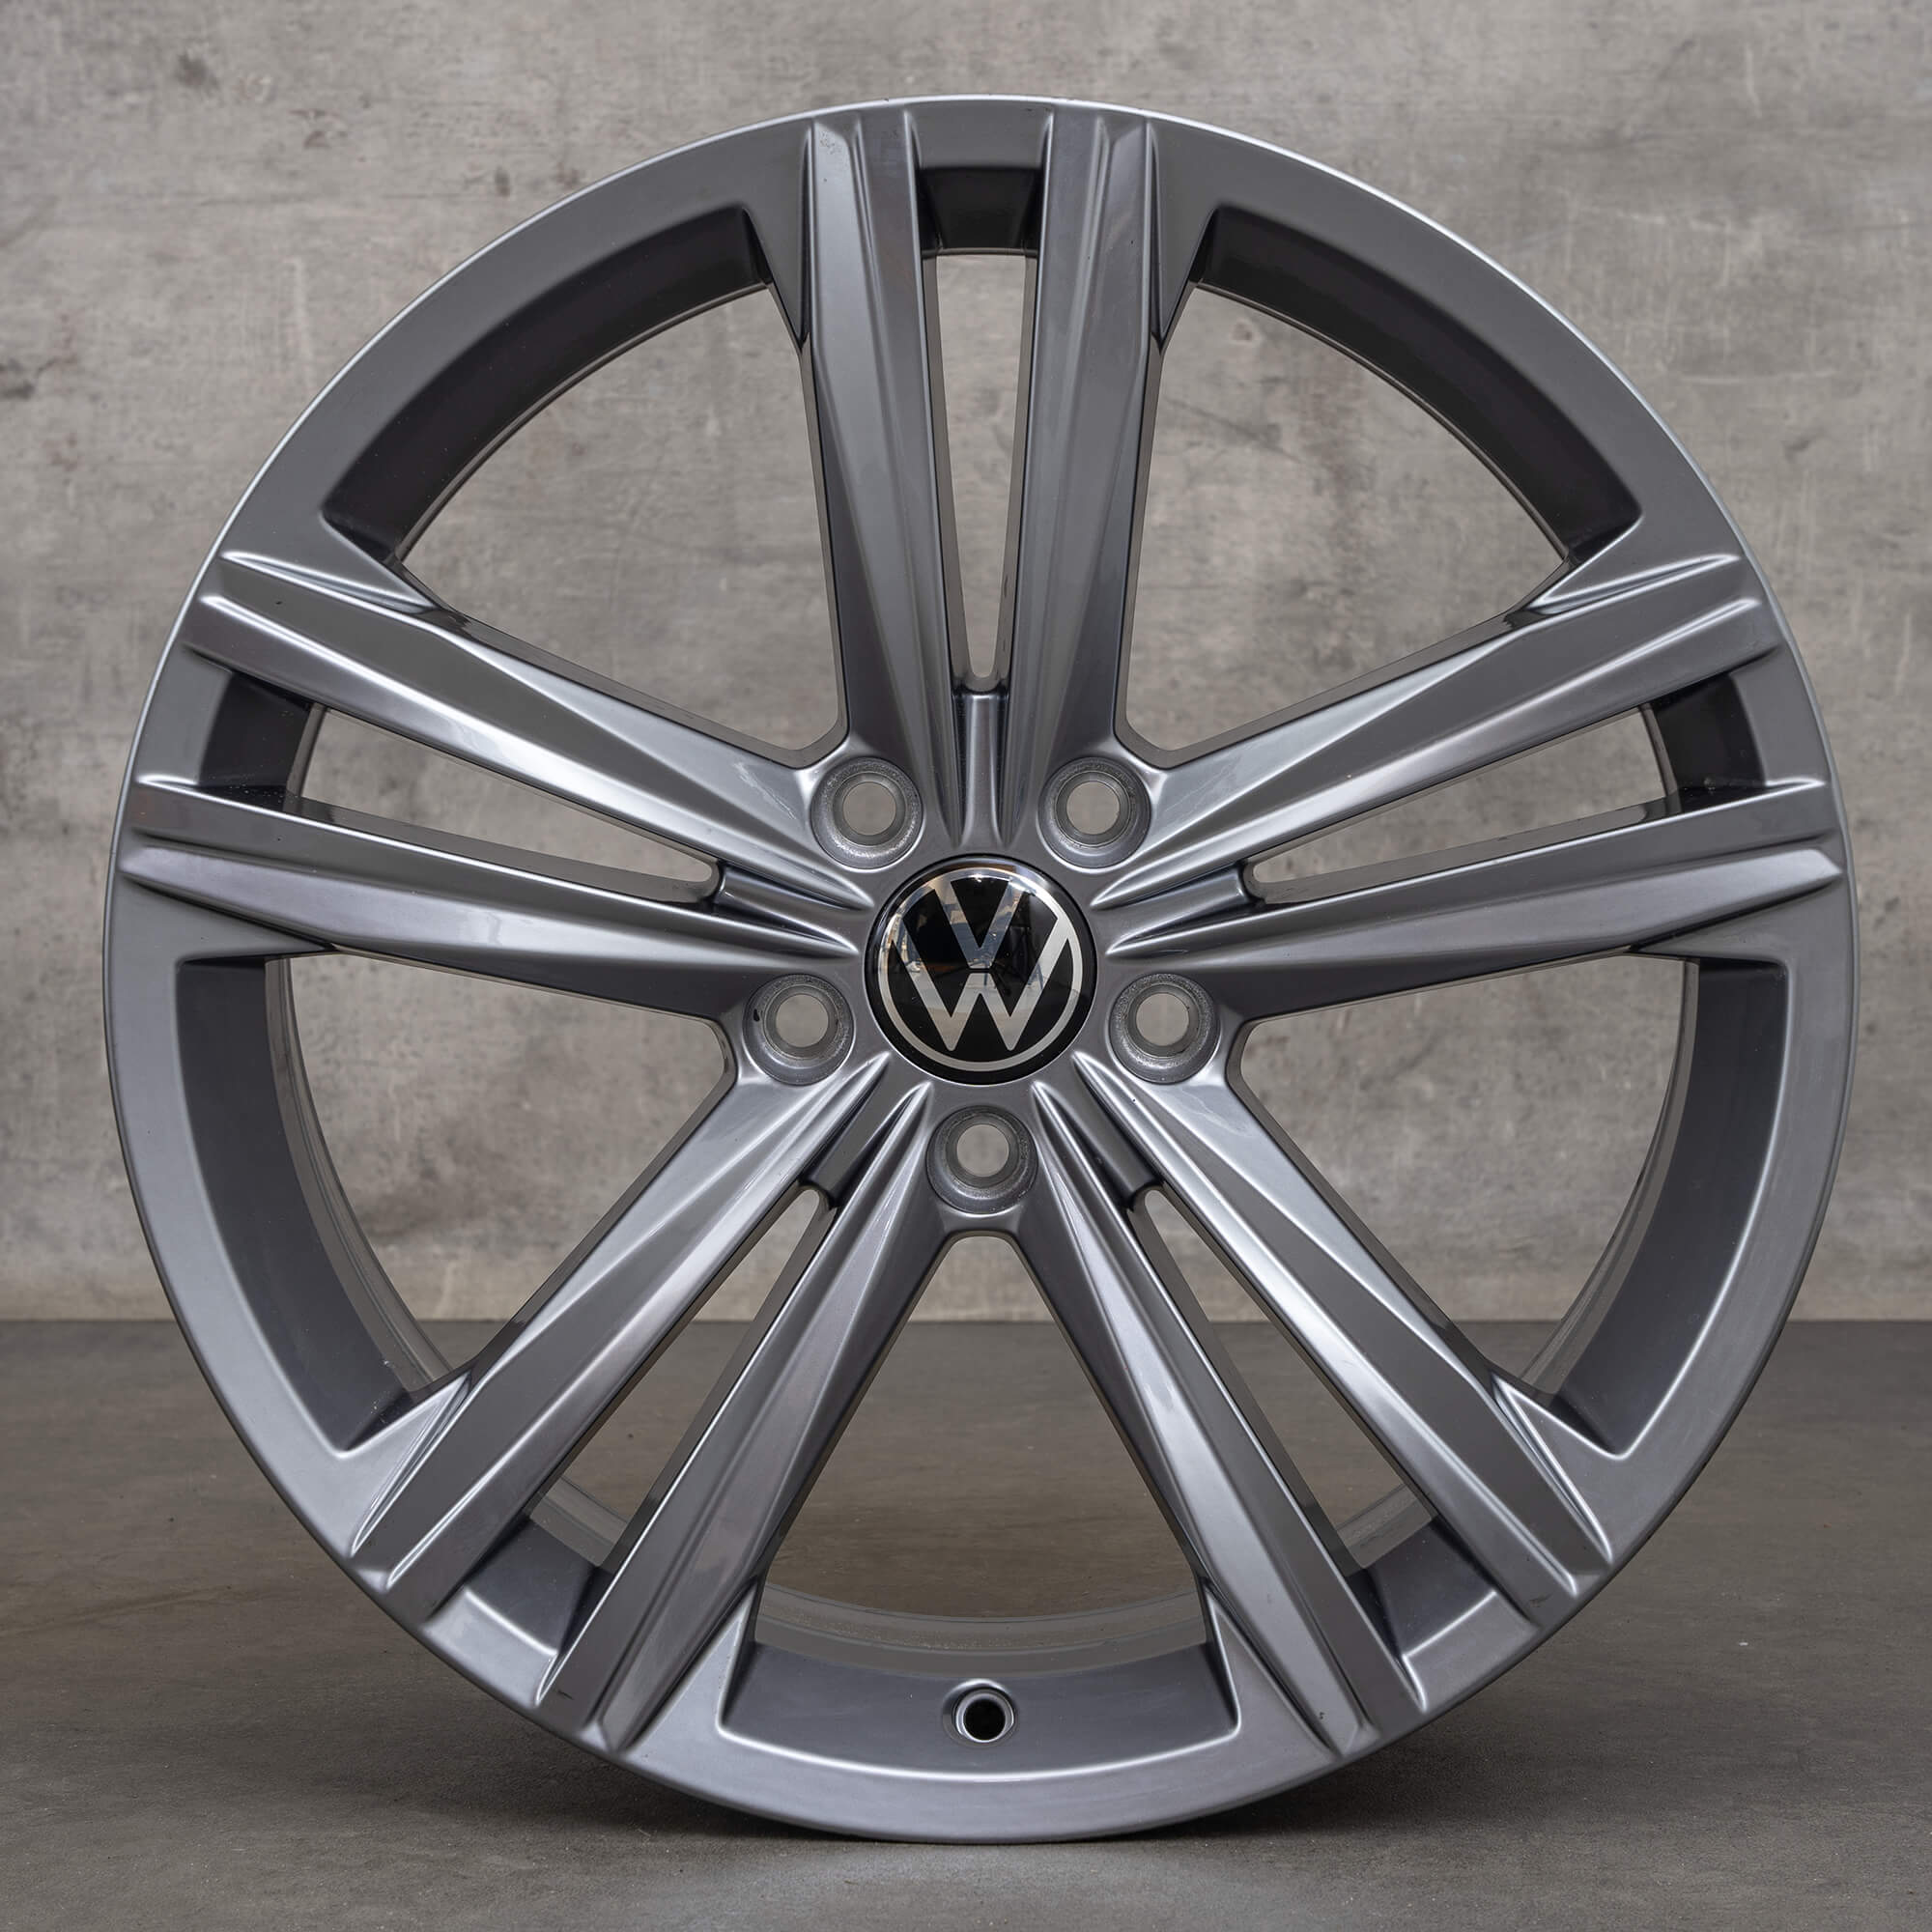 VW Arteon Passat Alltrack 3G Llantas de 18 pulgadas Sebring gris tremolita